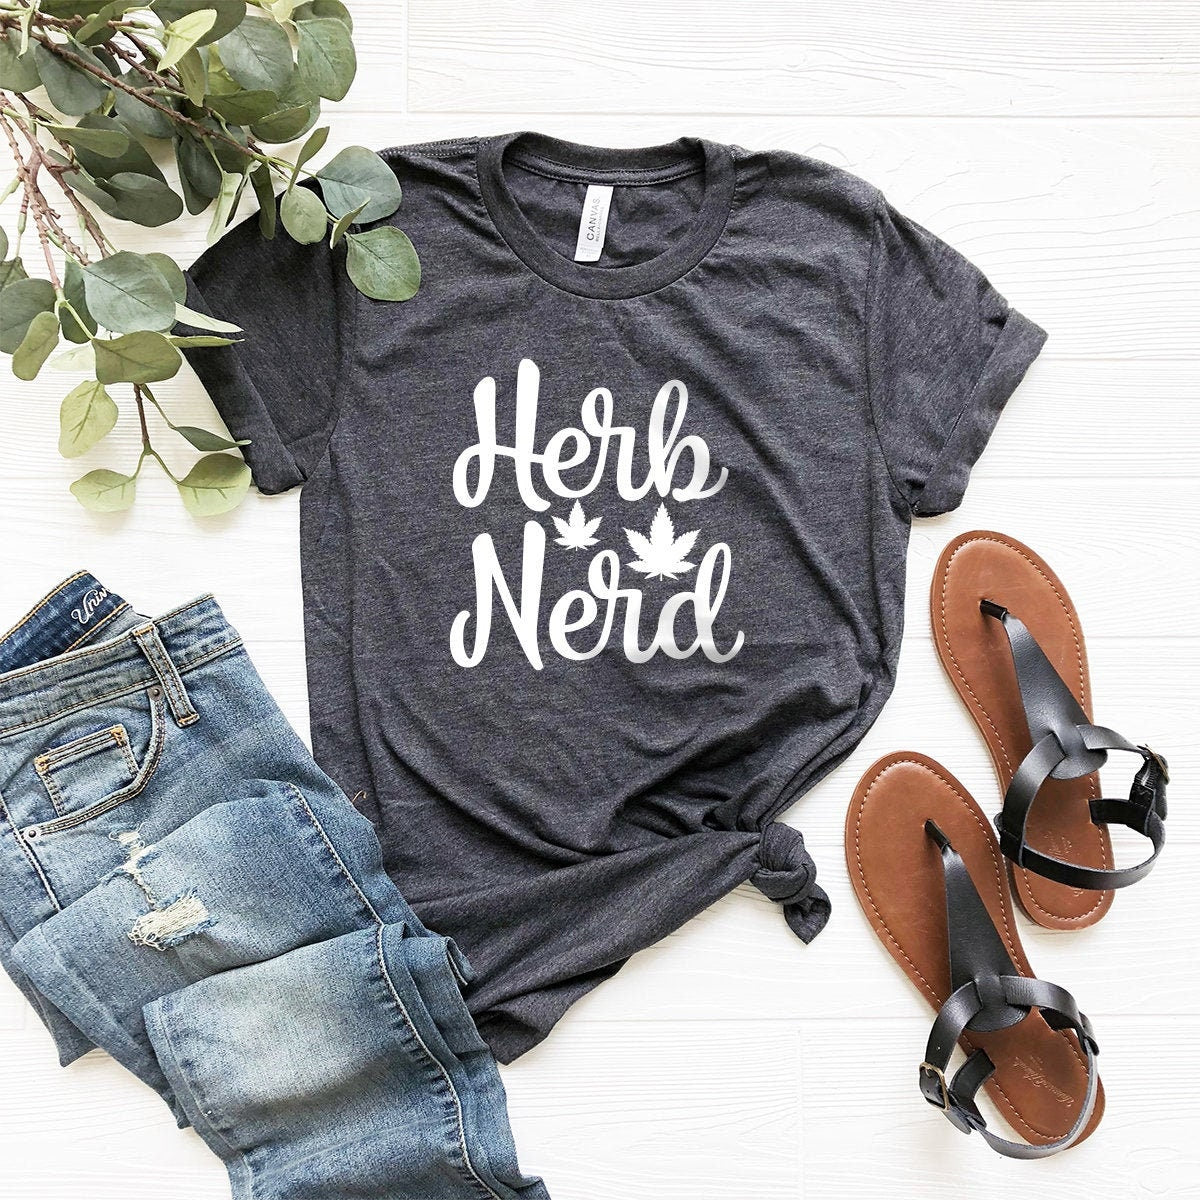 Herb Nerd Shirt, Weed Shirt, Weed T-shirt, Weed Tee, Funny Weed Shirt, Marijuana Shirt, Cannabis Shirt, Weed Lover Shirt, 420-Weed Shirt - Fastdeliverytees.com